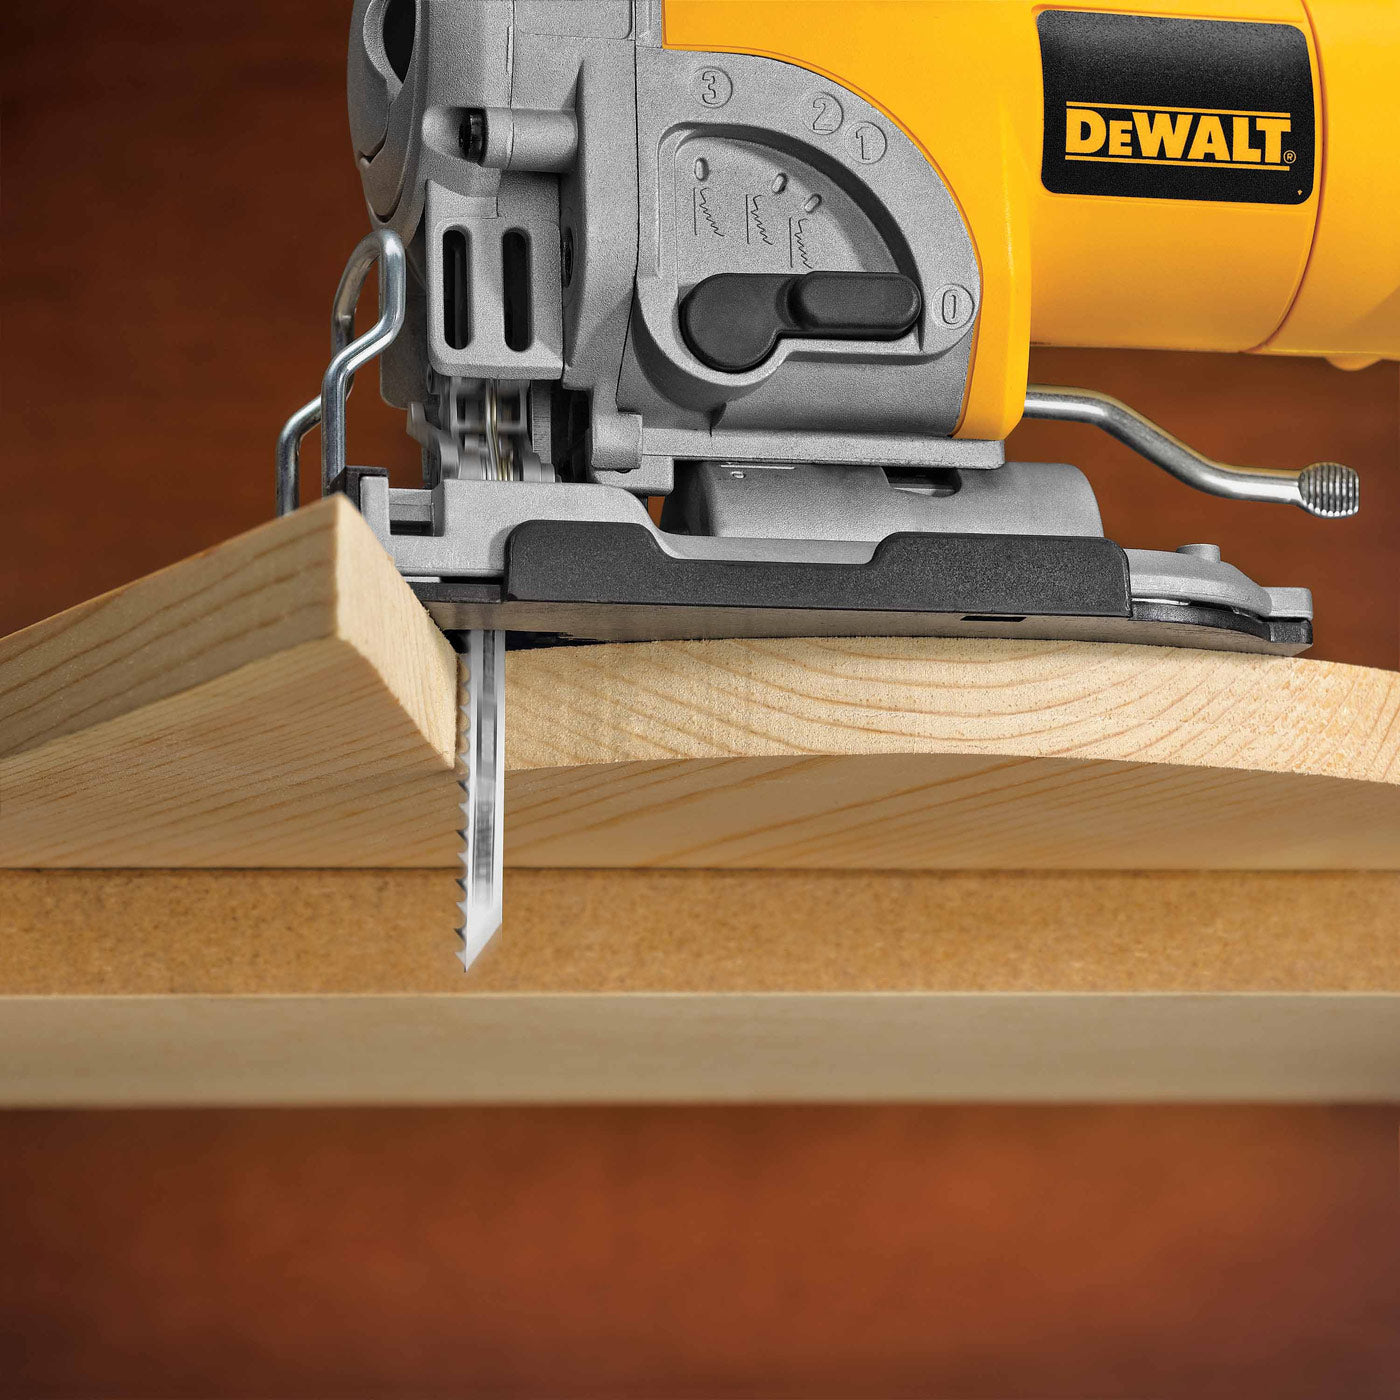 DeWalt DW3753H 4" 6 TPI T-Shank Clean Cut Wood Cutting Jig Saw Blade, 5 Pack